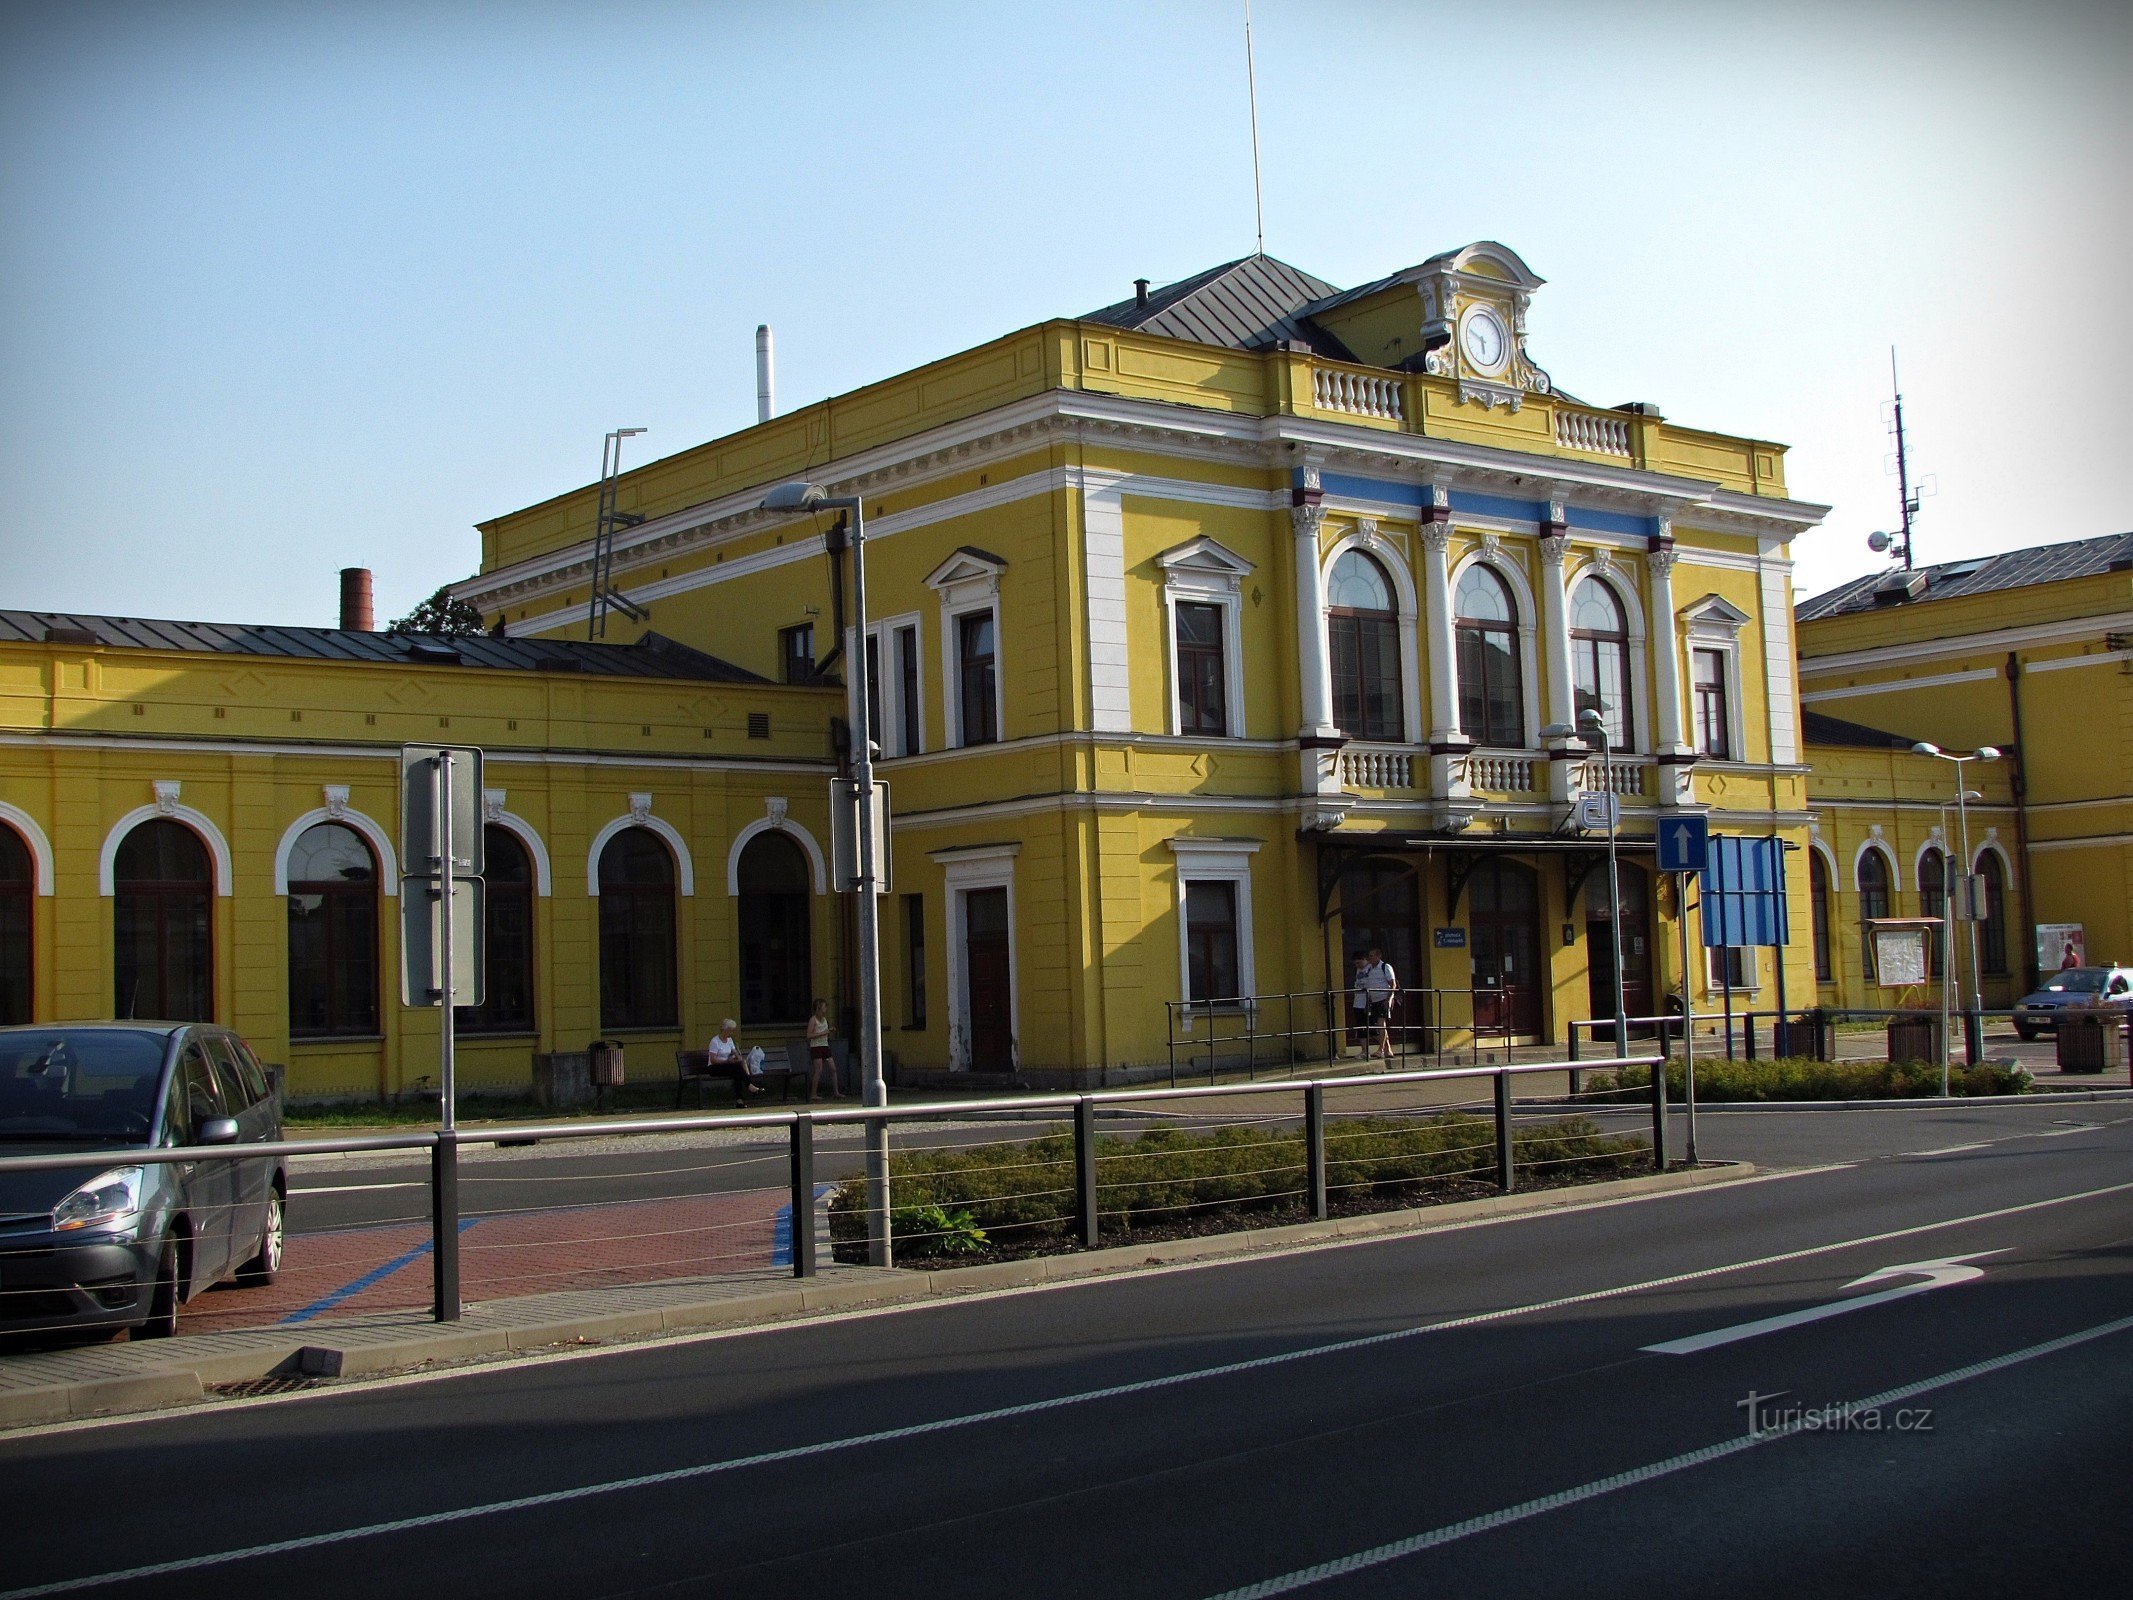 Šumperk - glavna zgrada željezničkog kolodvora